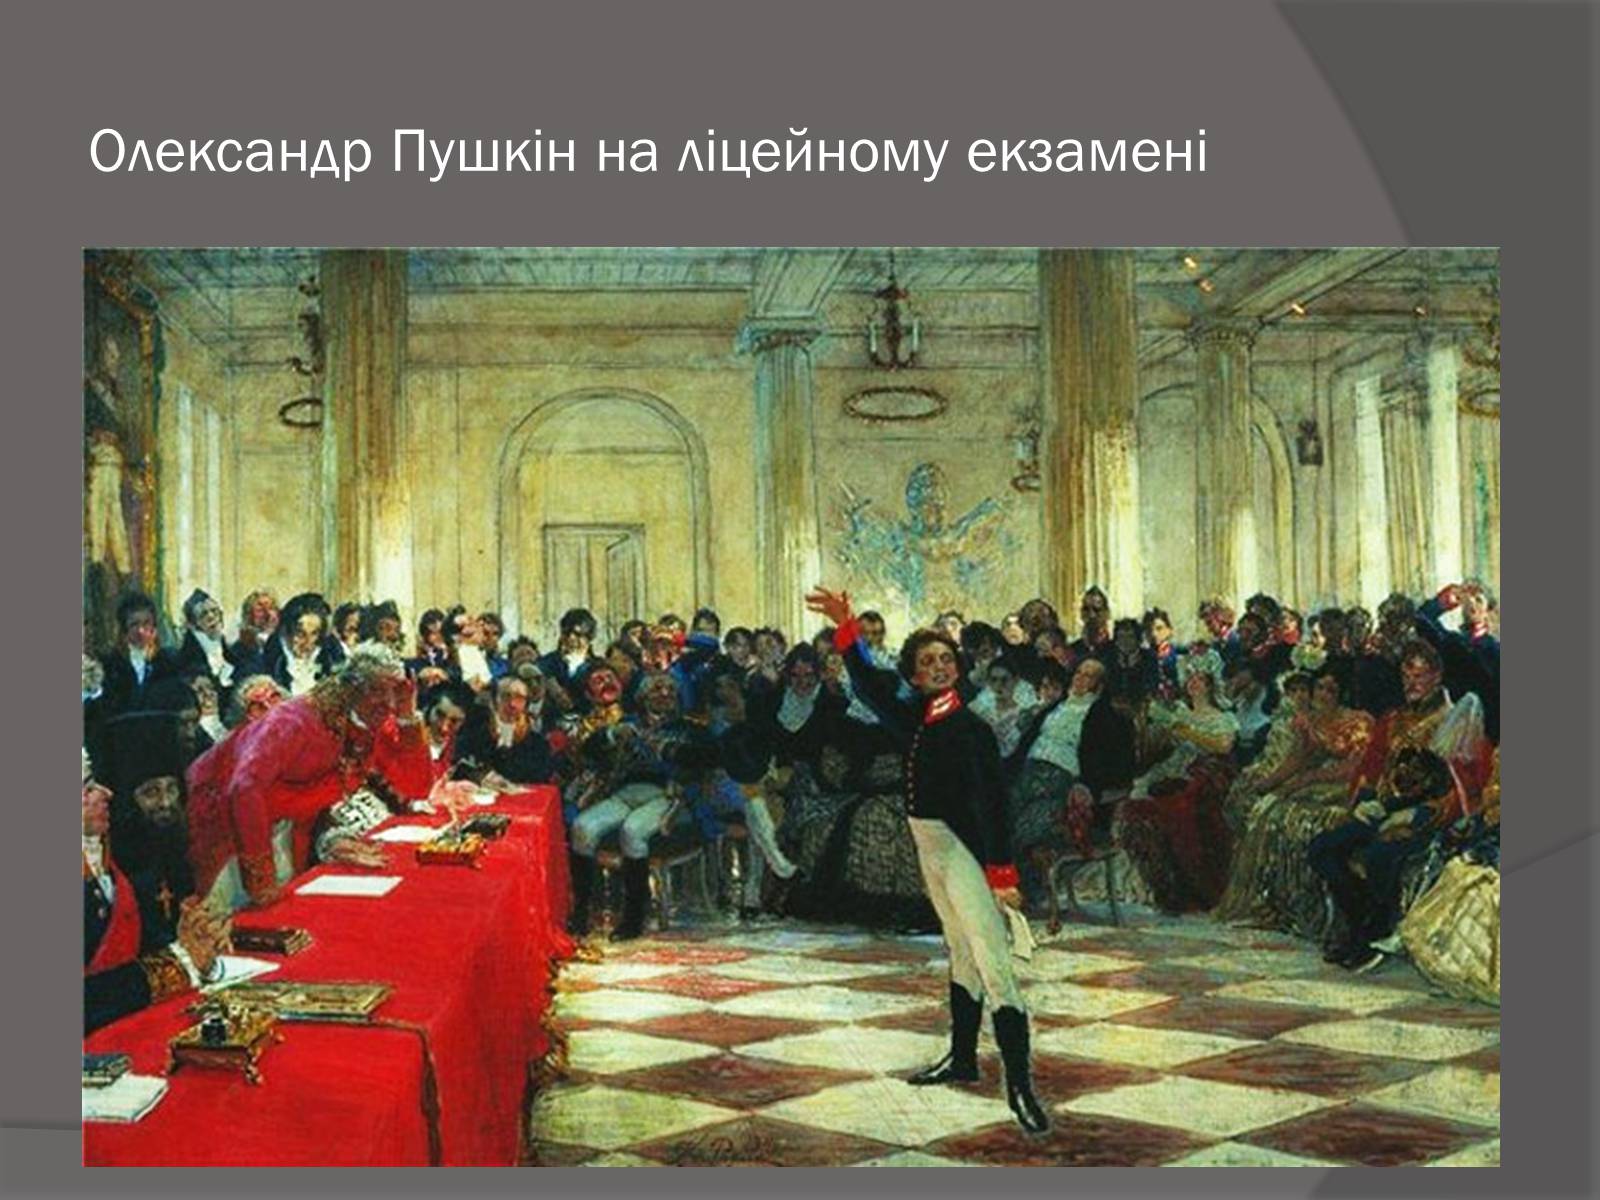 Пушкин на лицейском экзамене в Царском селе 8 января 1815 года